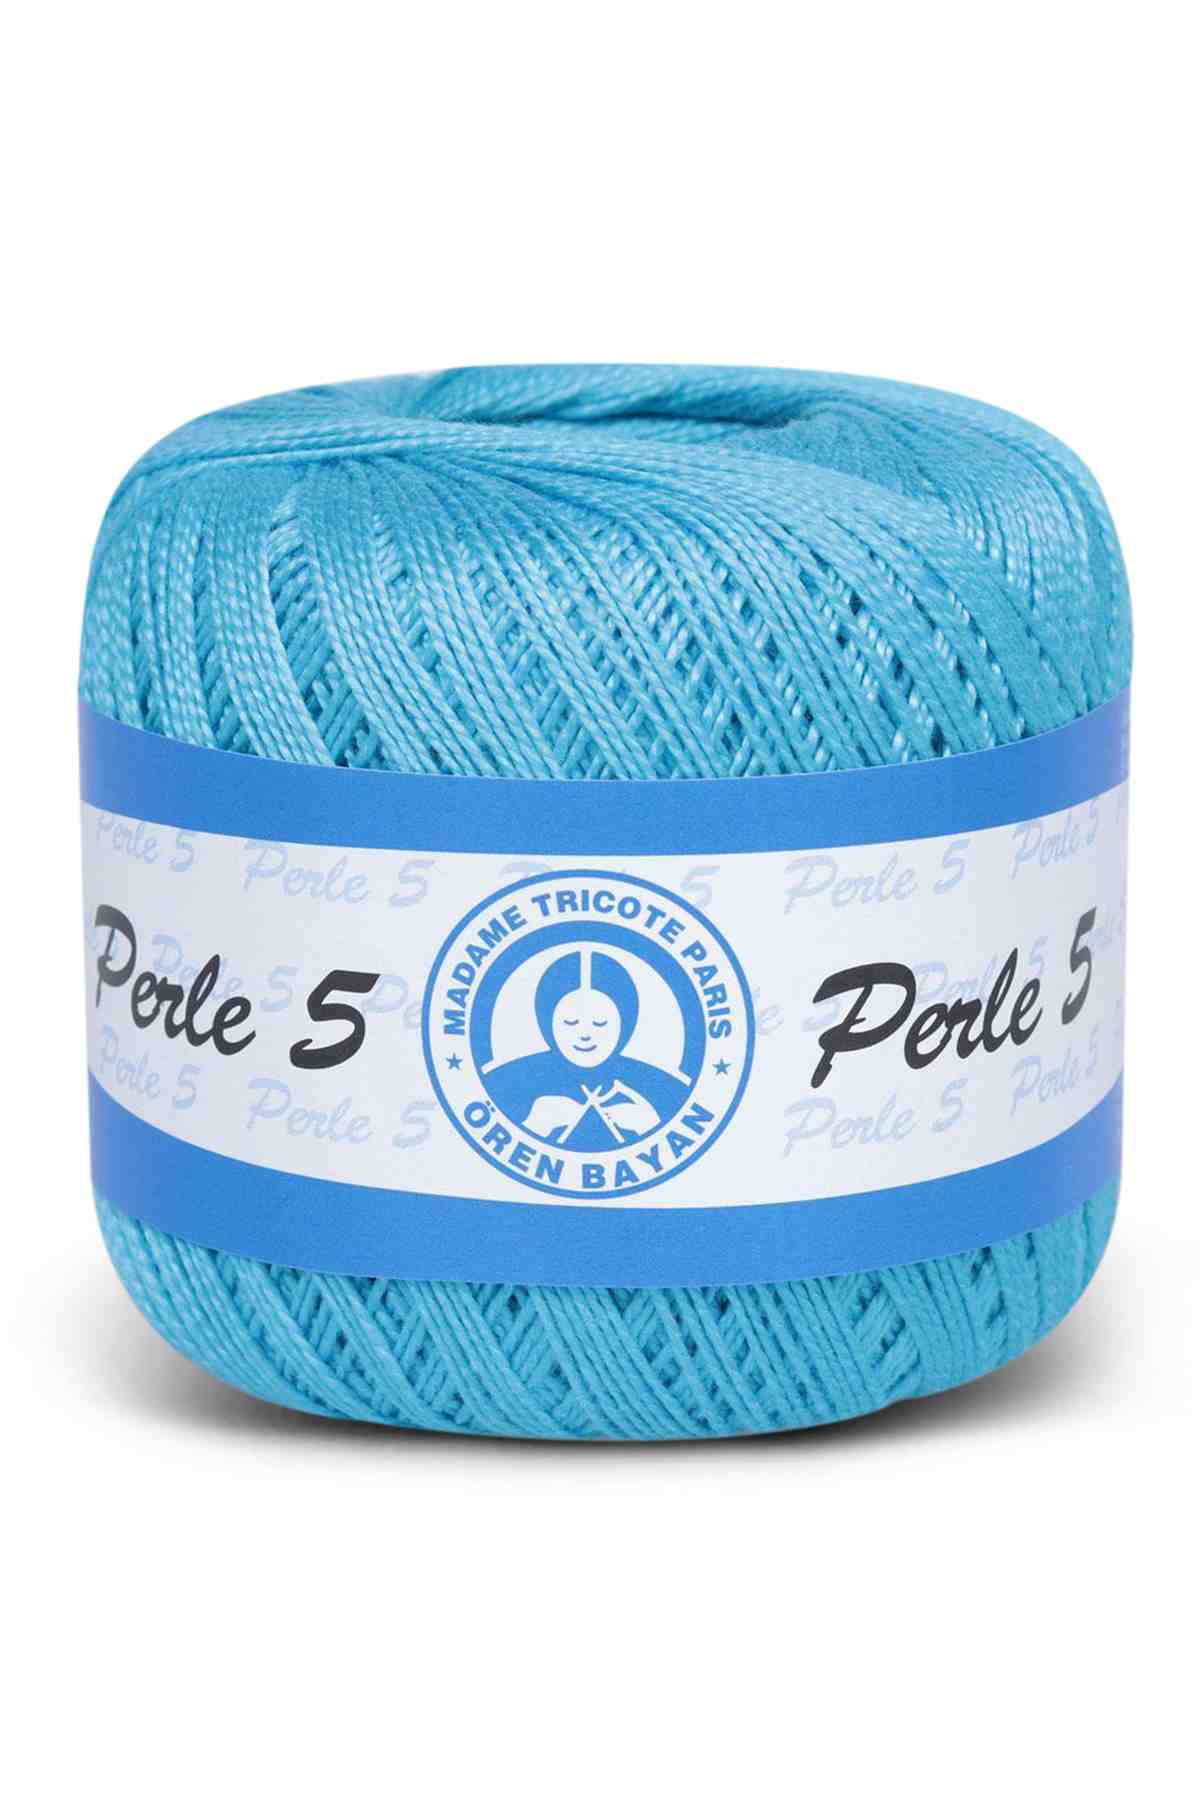 La Vita Polyester Embroidery Thread